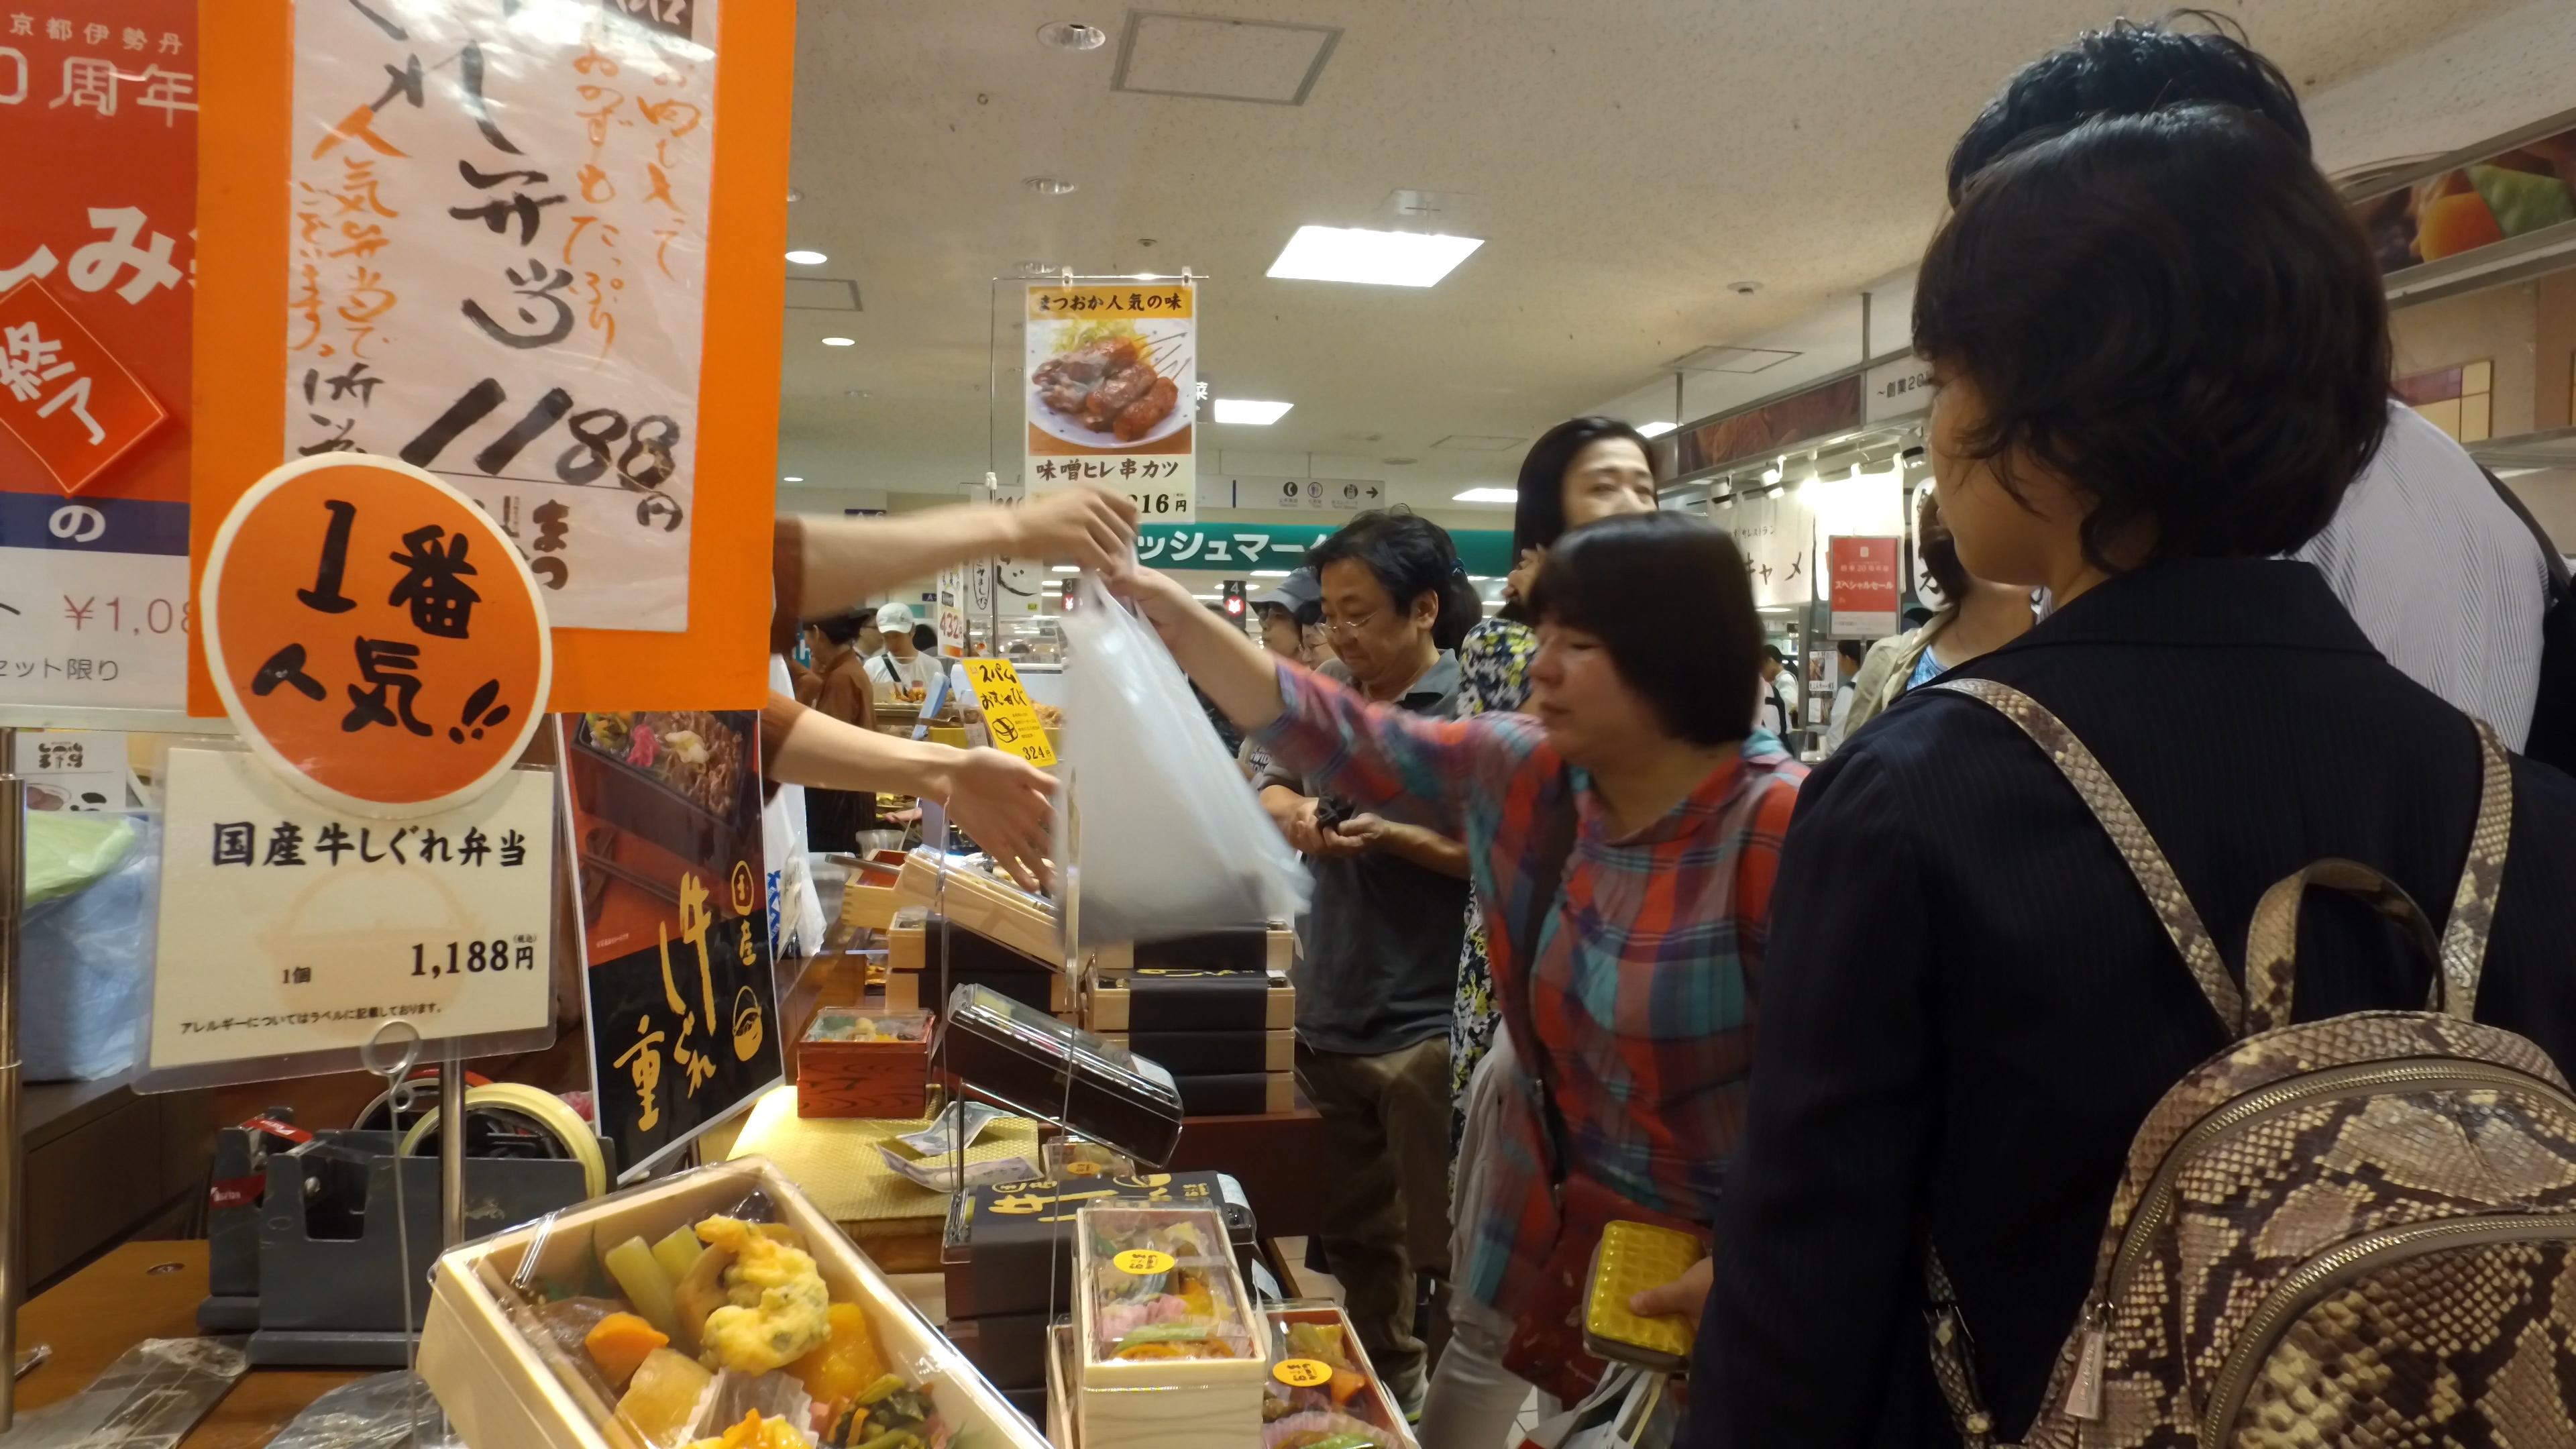 Isetan food market, Kyoto station